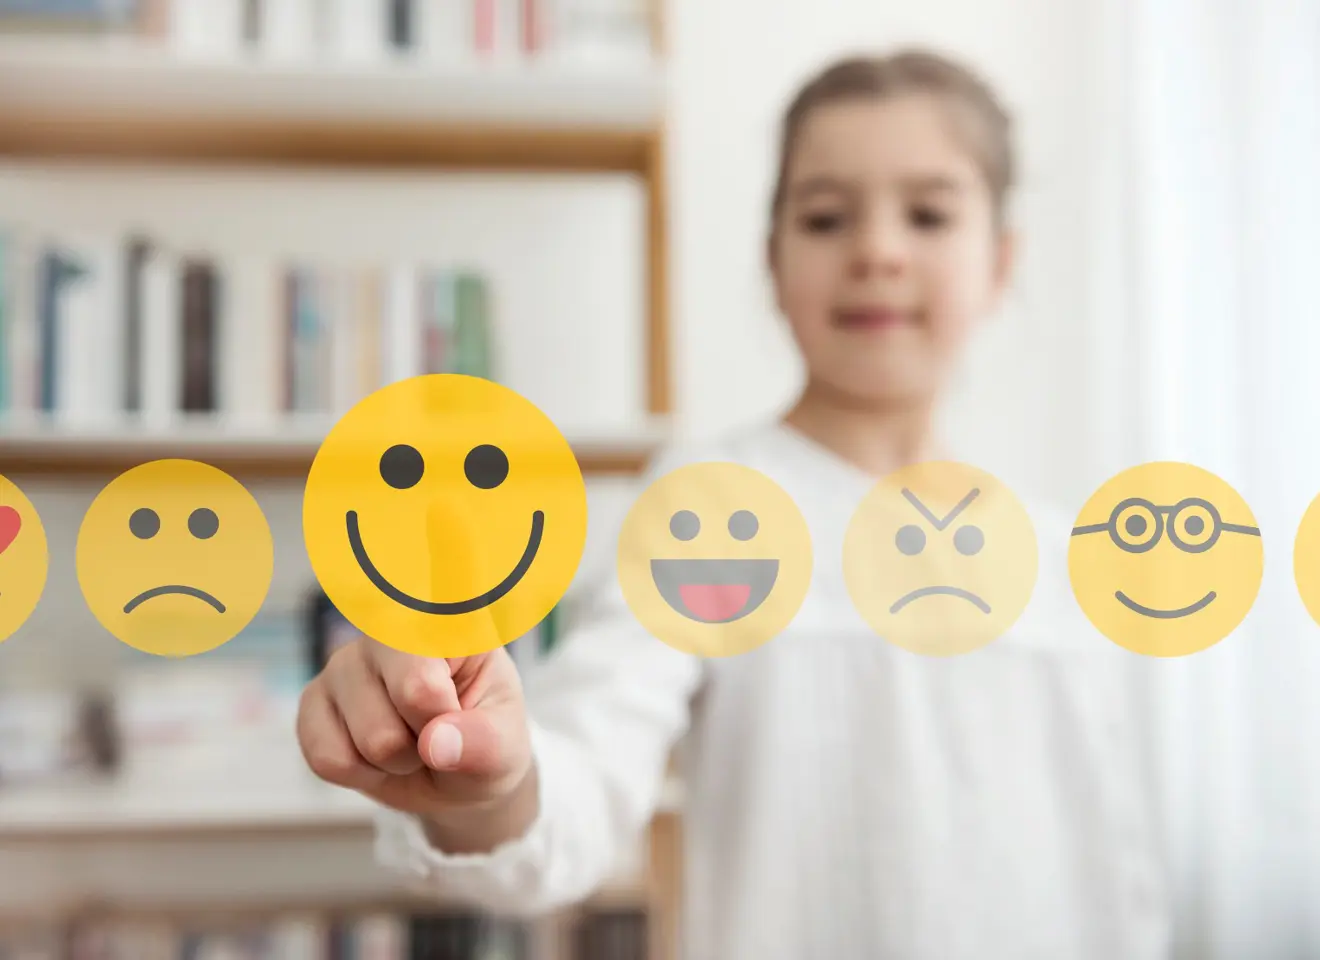 Barn som ser på emojies